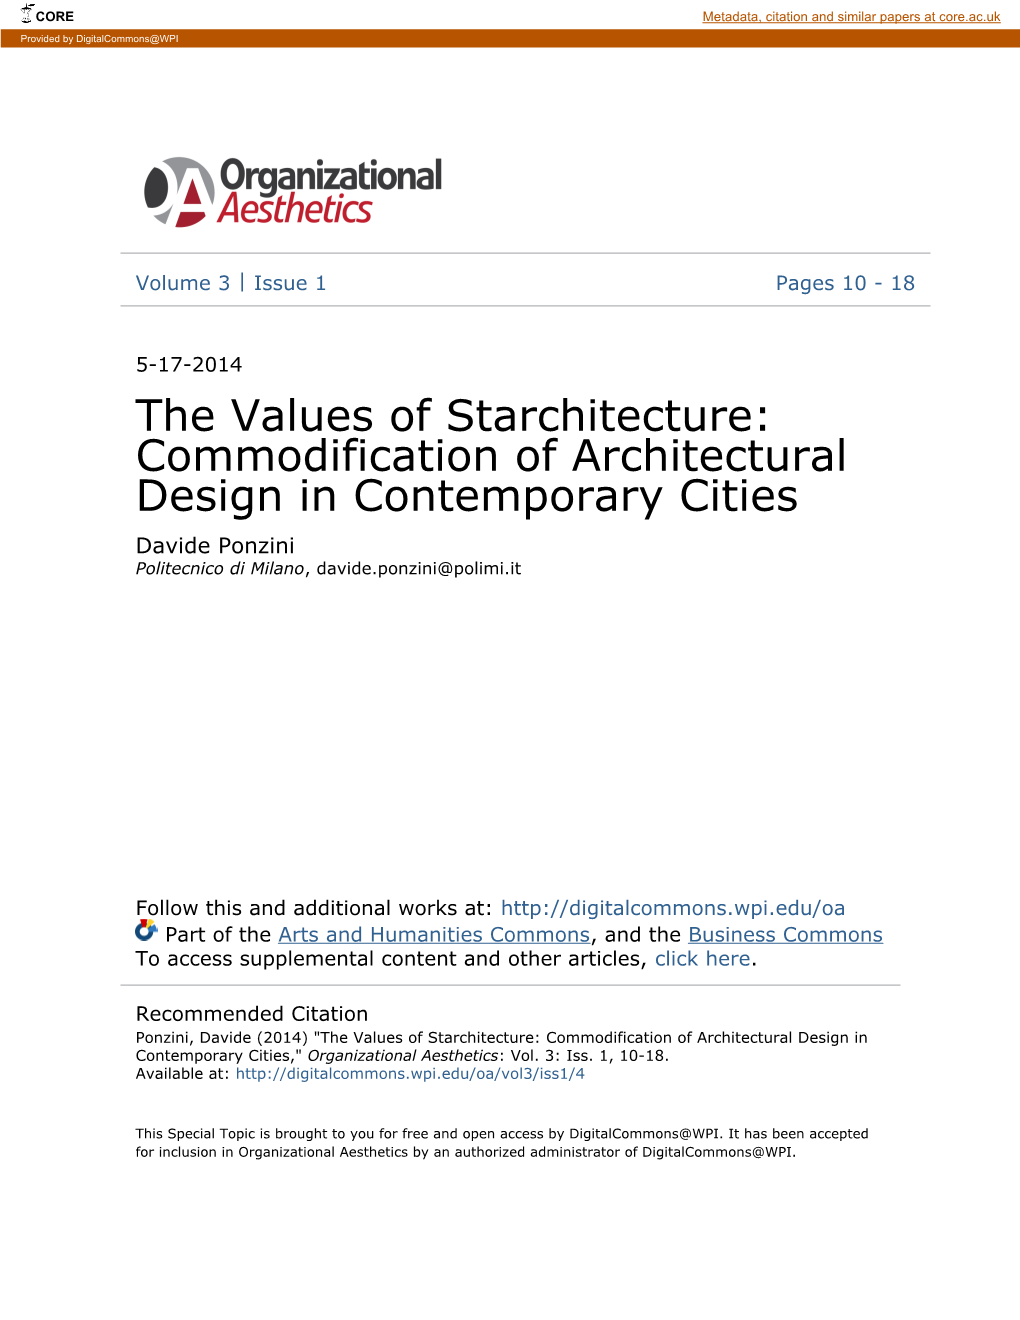 The Values of Starchitecture: Commodification of Architectural Design in Contemporary Cities Davide Ponzini Politecnico Di Milano, Davide.Ponzini@Polimi.It